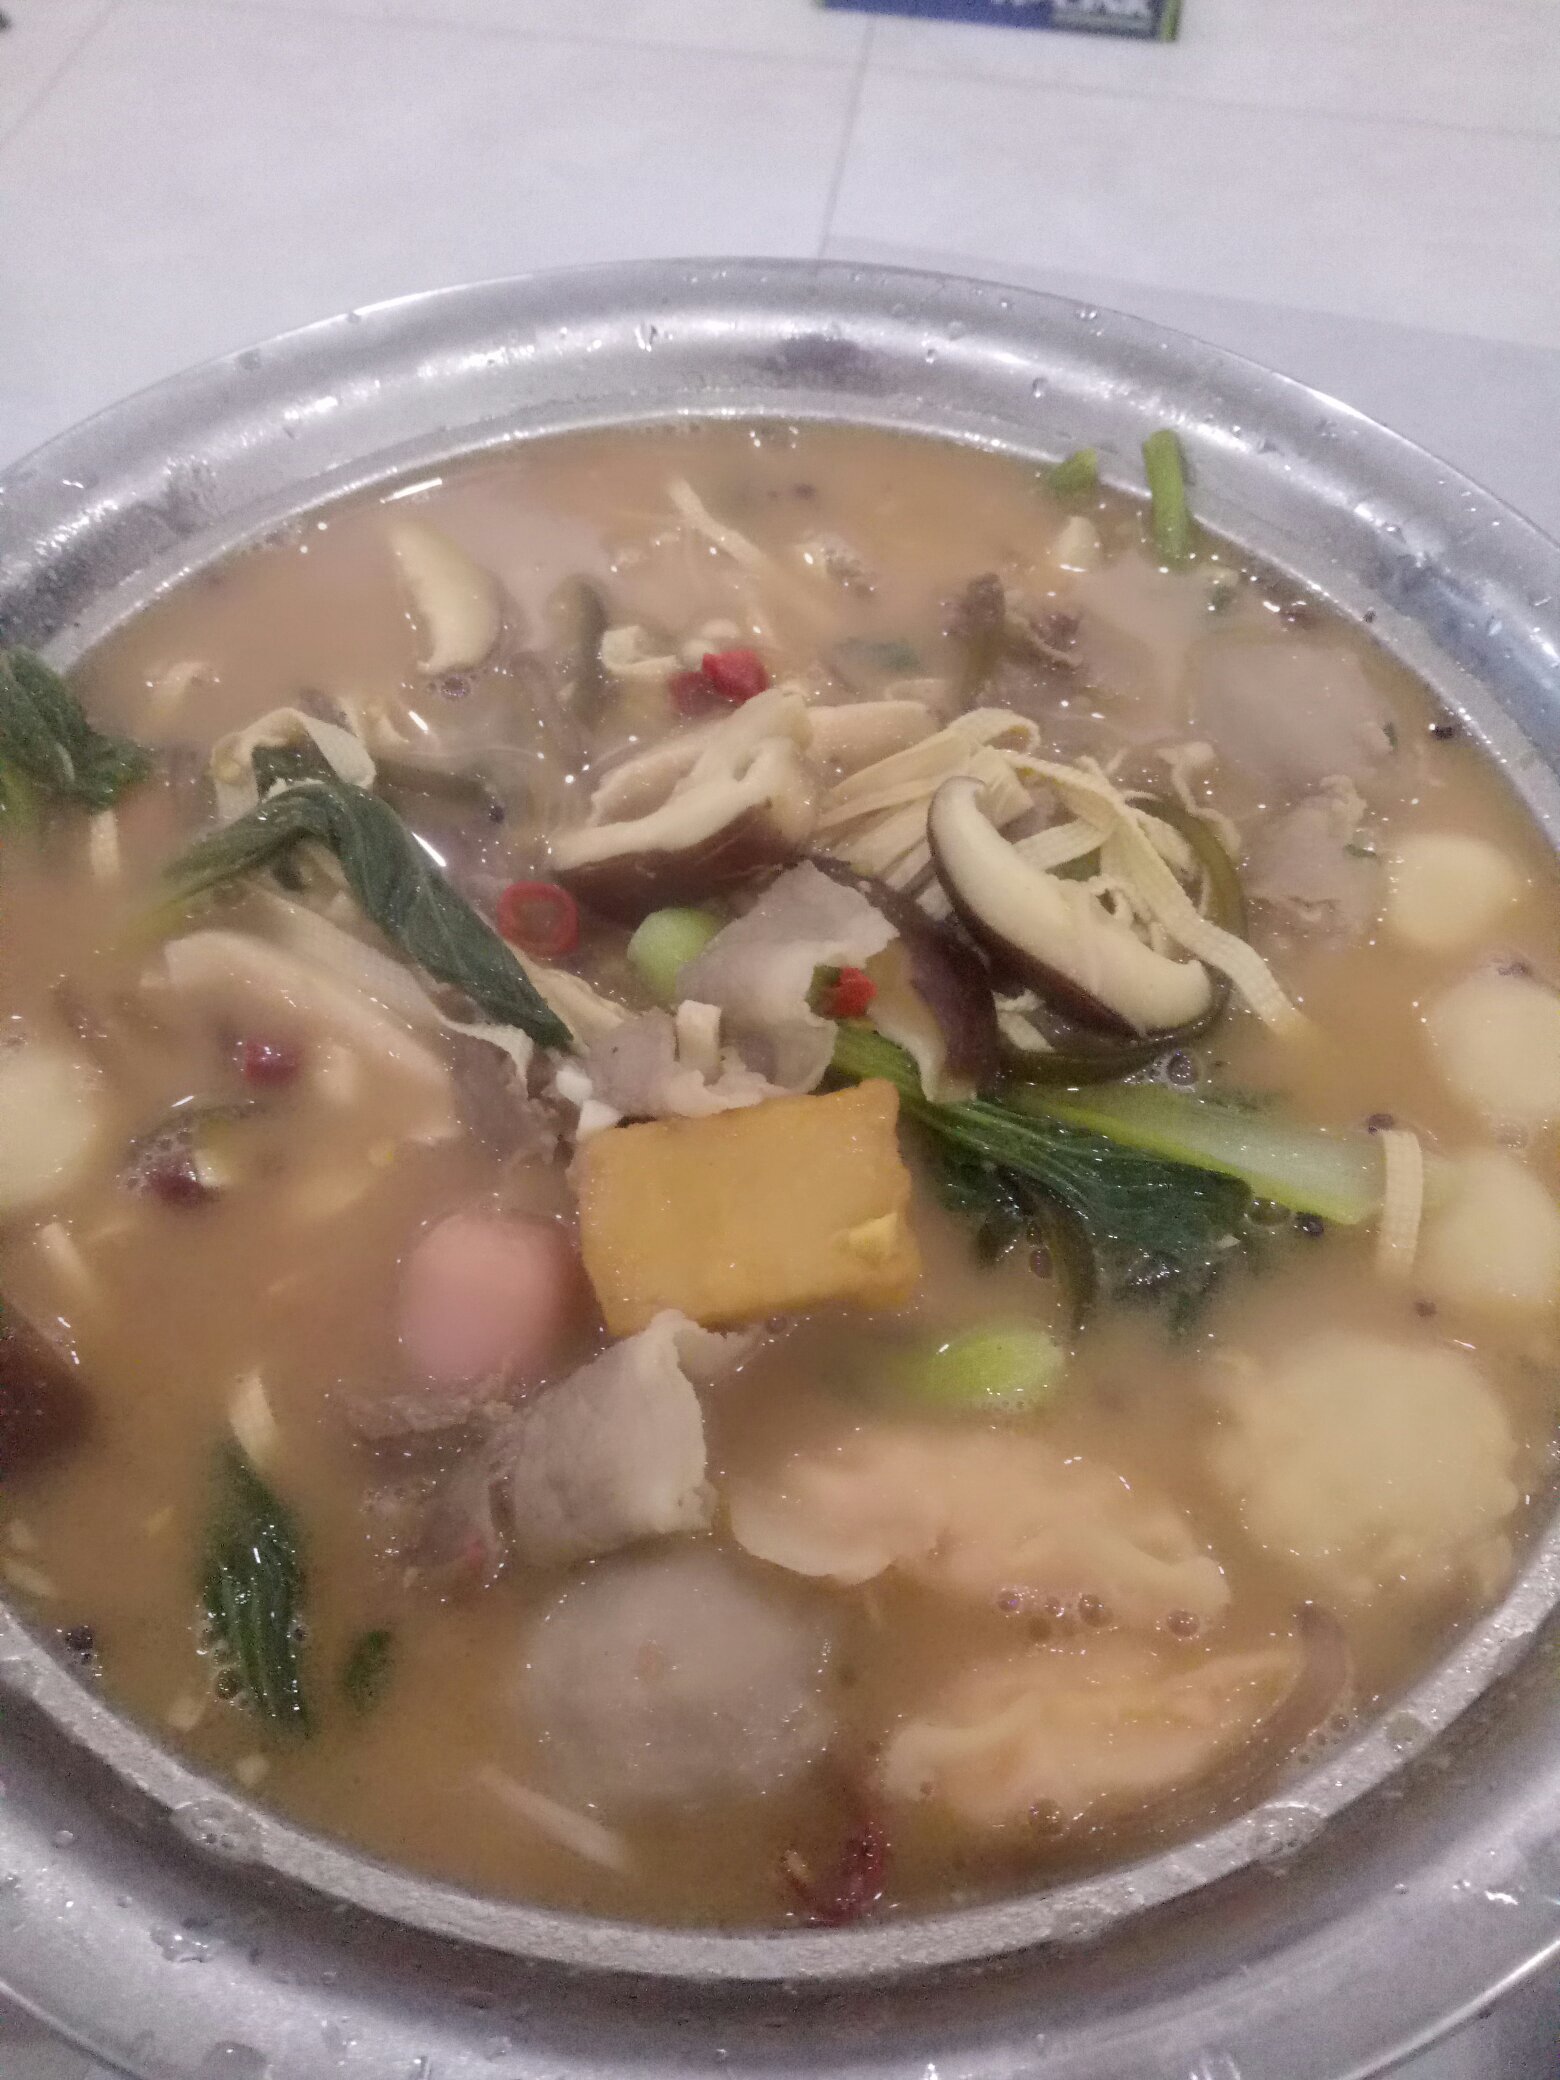 砂锅炖菜（麻辣版）